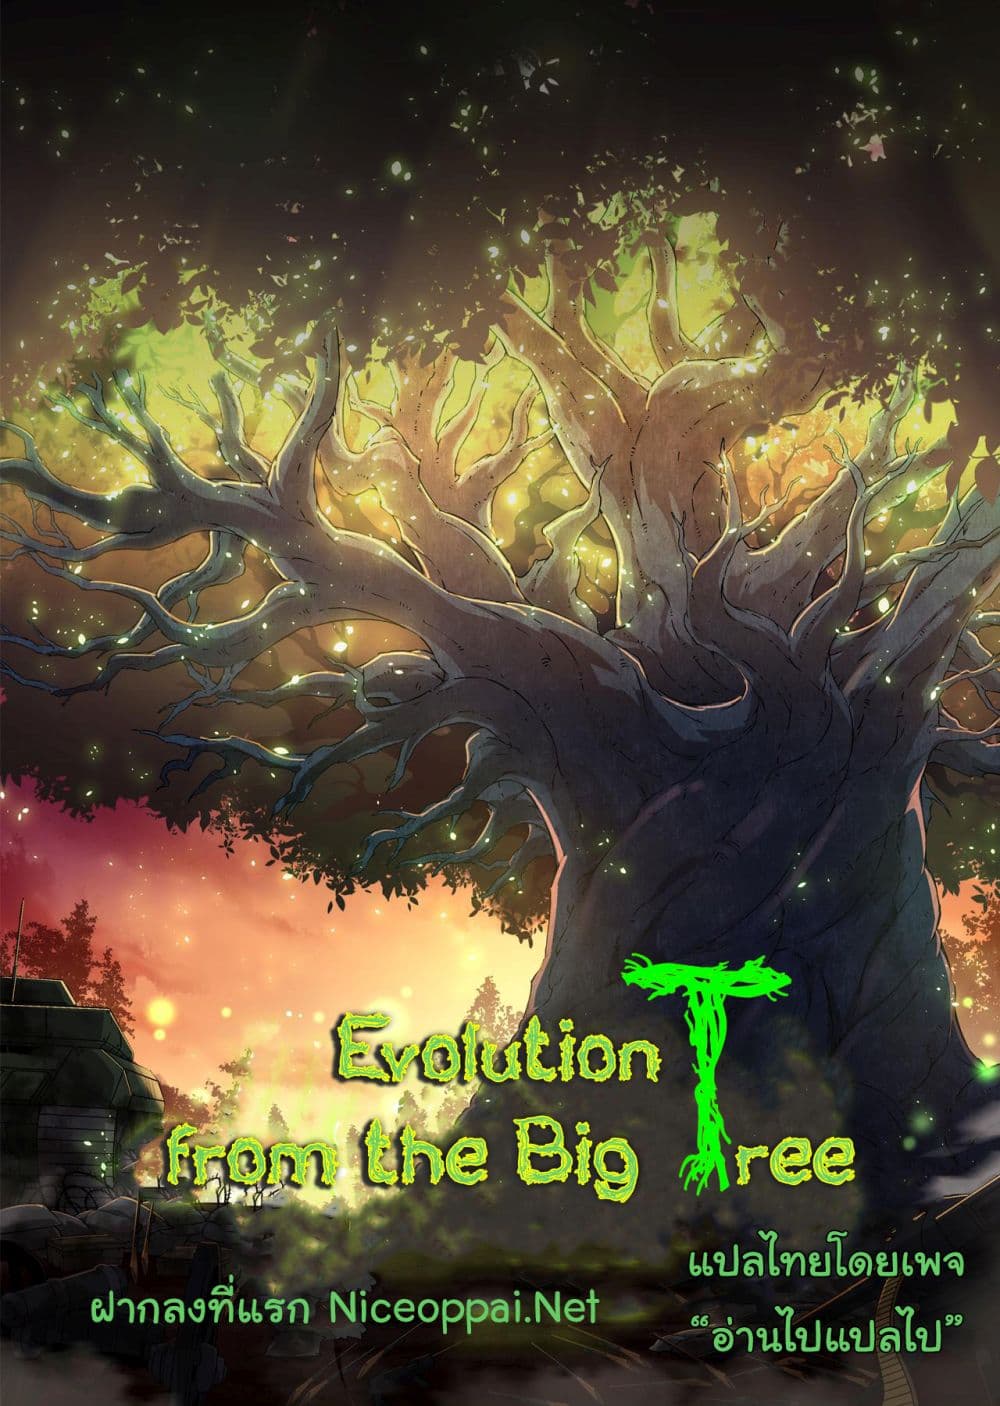 Evolution from the Big Tree Ã Â¸â€¢Ã Â¸Â­Ã Â¸â„¢Ã Â¸â€”Ã Â¸ÂµÃ Â¹Ë† 30 (1)